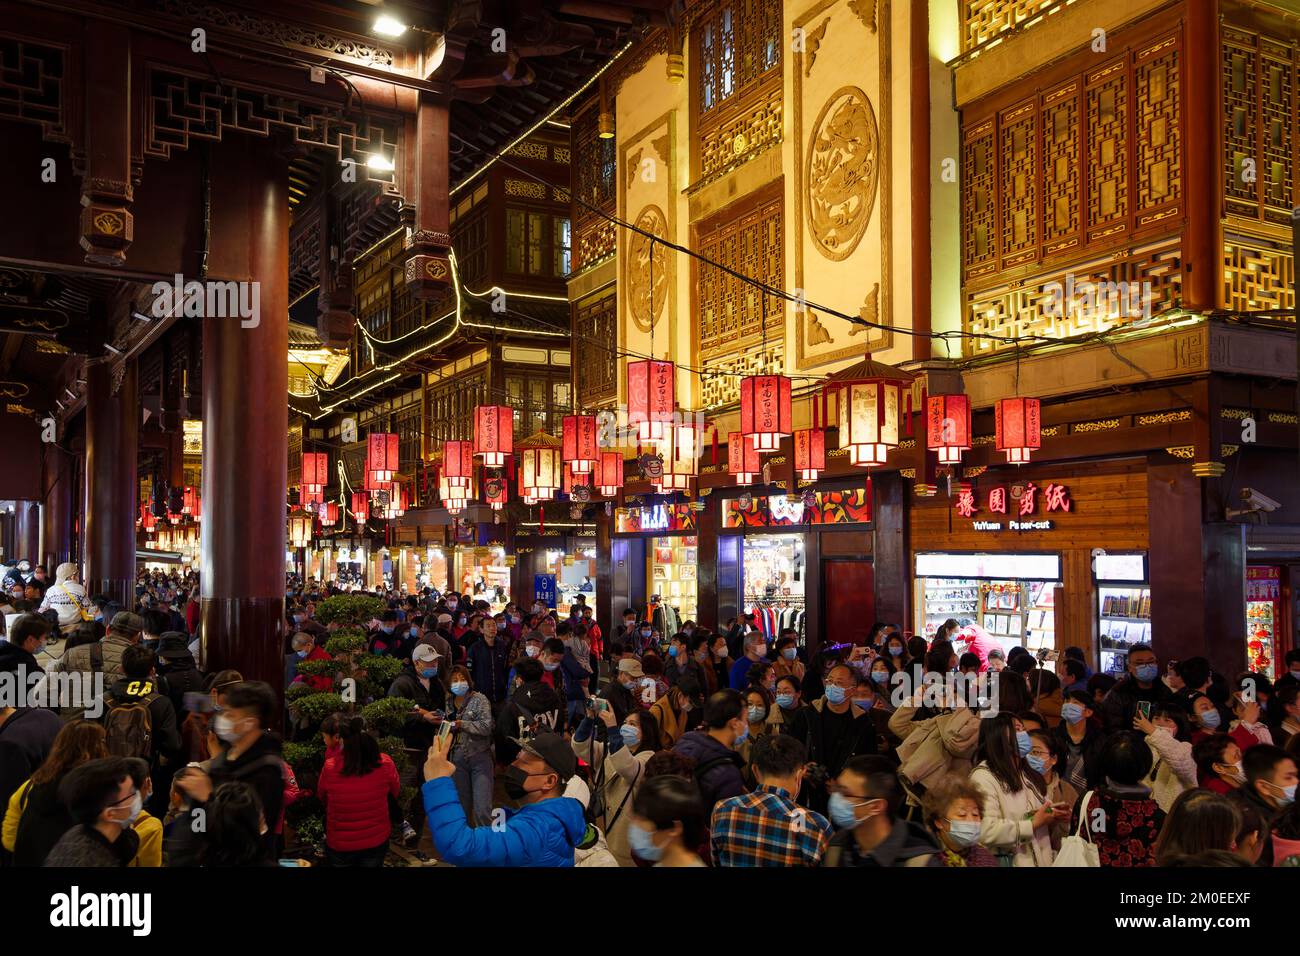 Shanghai, Chine: Lanternes chinoises illuminées accrochées dans le bazar de Yuyuan tandis que les gens apprécient les alentours illuminés pendant le nouvel an chinois. Banque D'Images